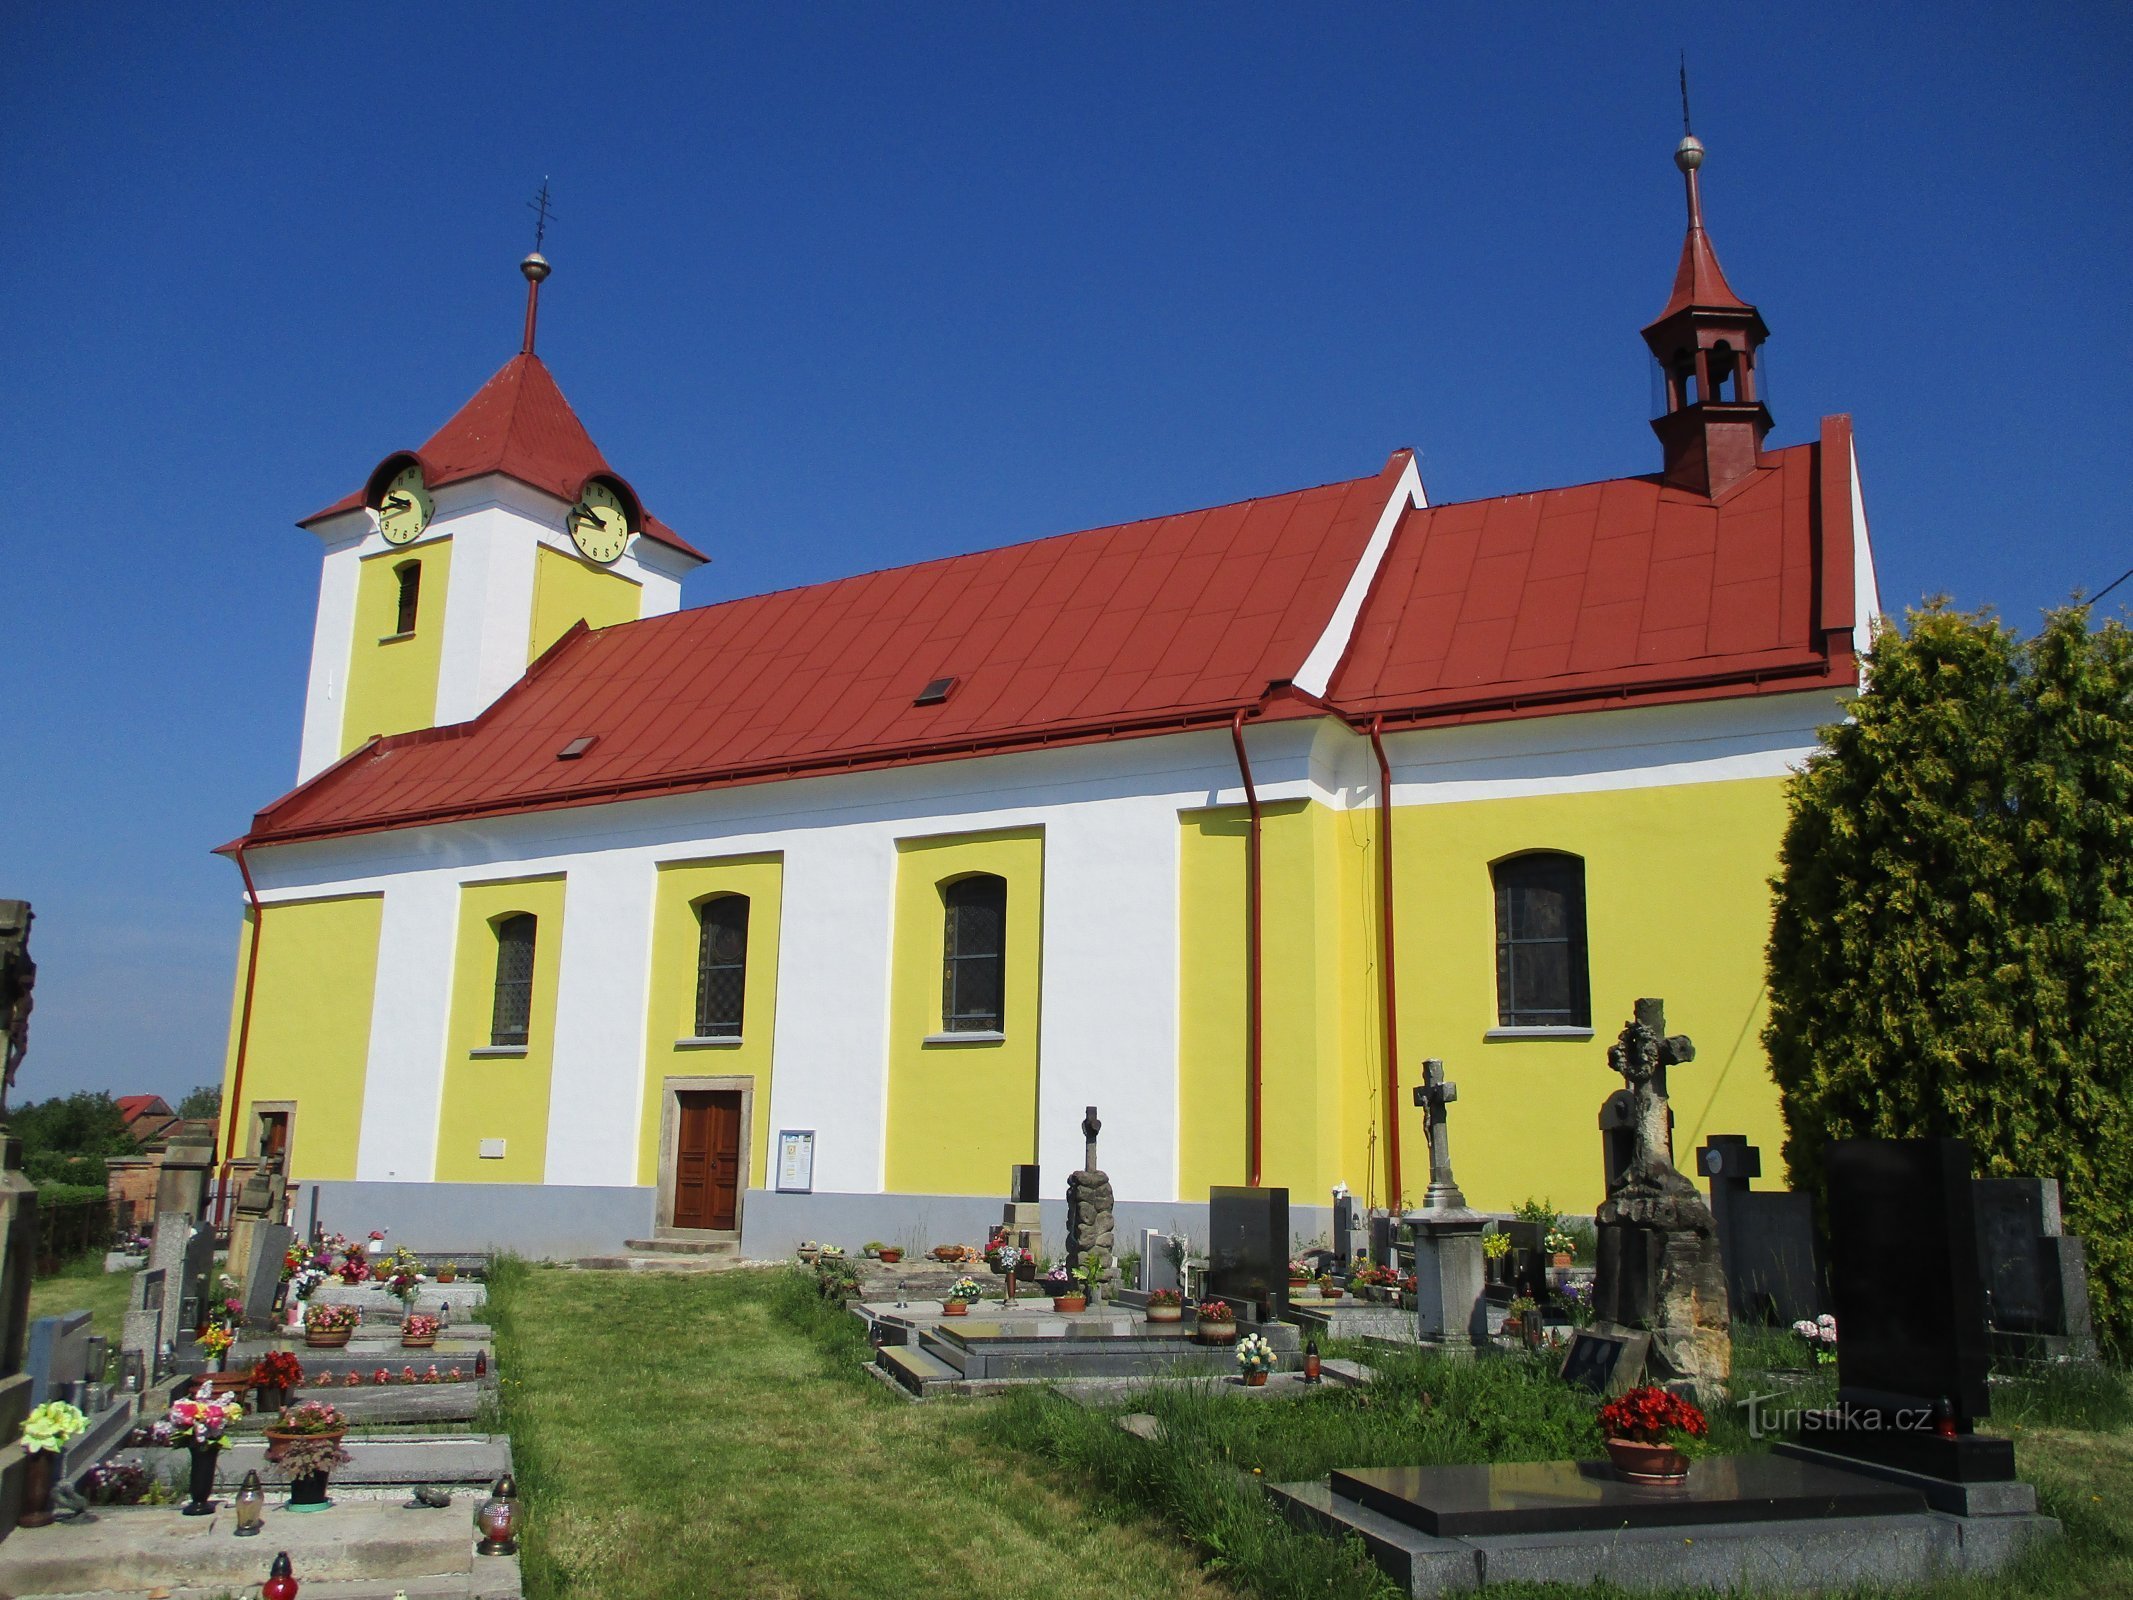 Church of the Assumption of the Virgin Mary (Velká Jesenice, 19.6.2019/XNUMX/XNUMX)